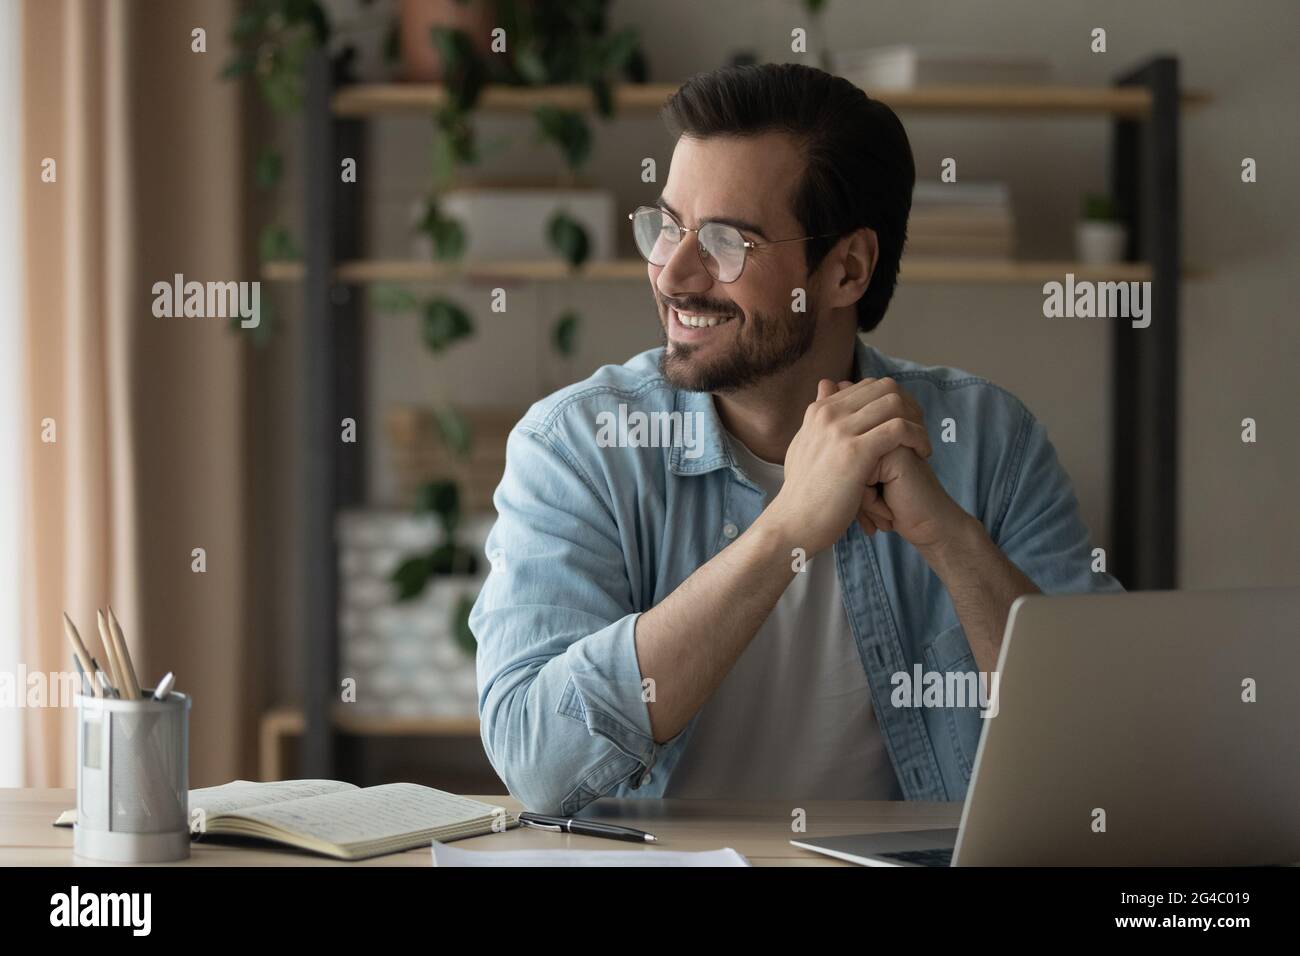 Lächelnder junger Mann in einer Brille lenkte von der Computerarbeit ab. Stockfoto